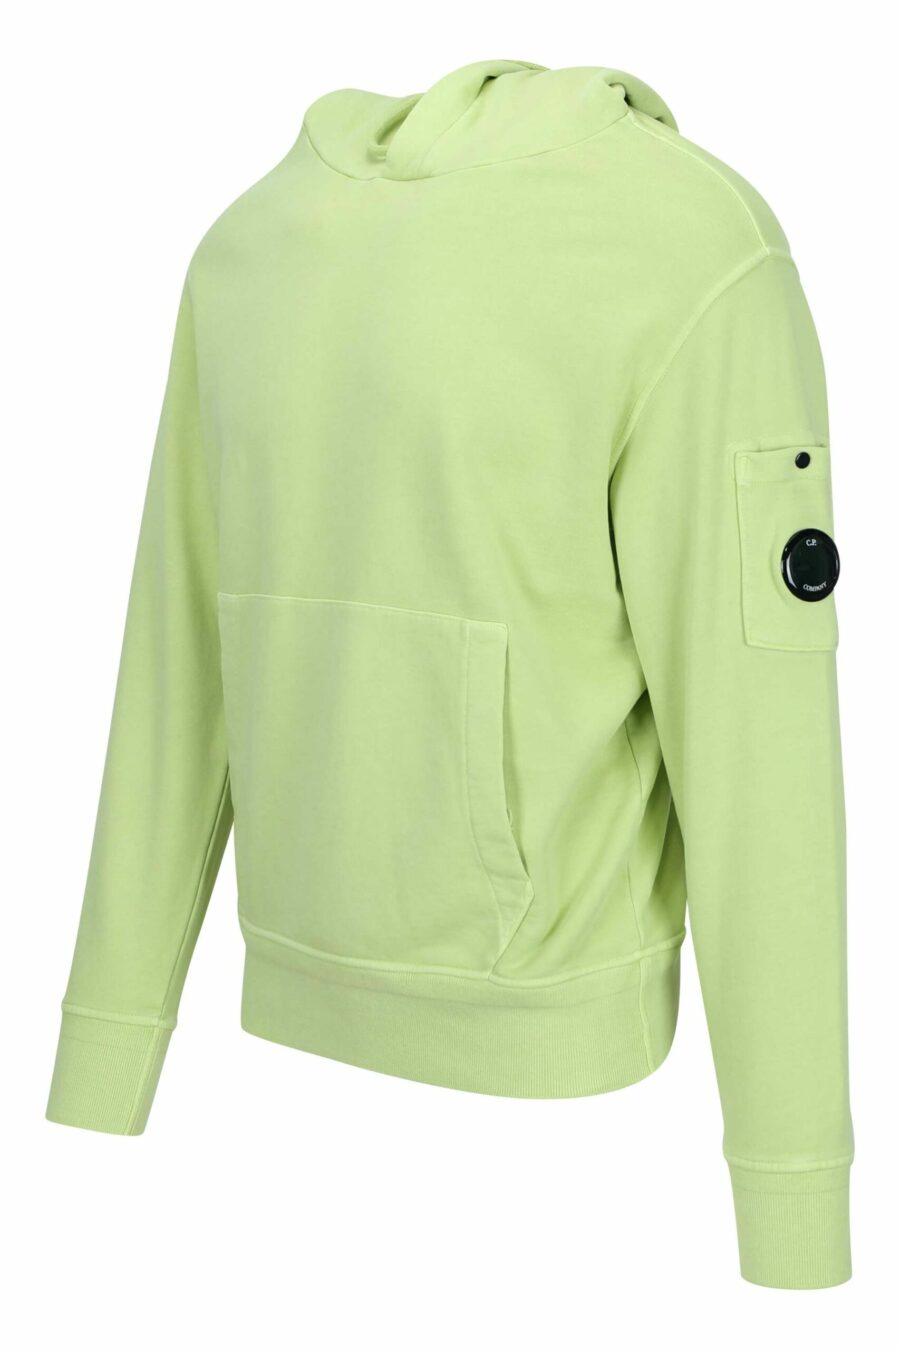 Hellgrünes Kapuzensweatshirt mit Minilogo-Linsentasche - 7620943677225 1 skaliert